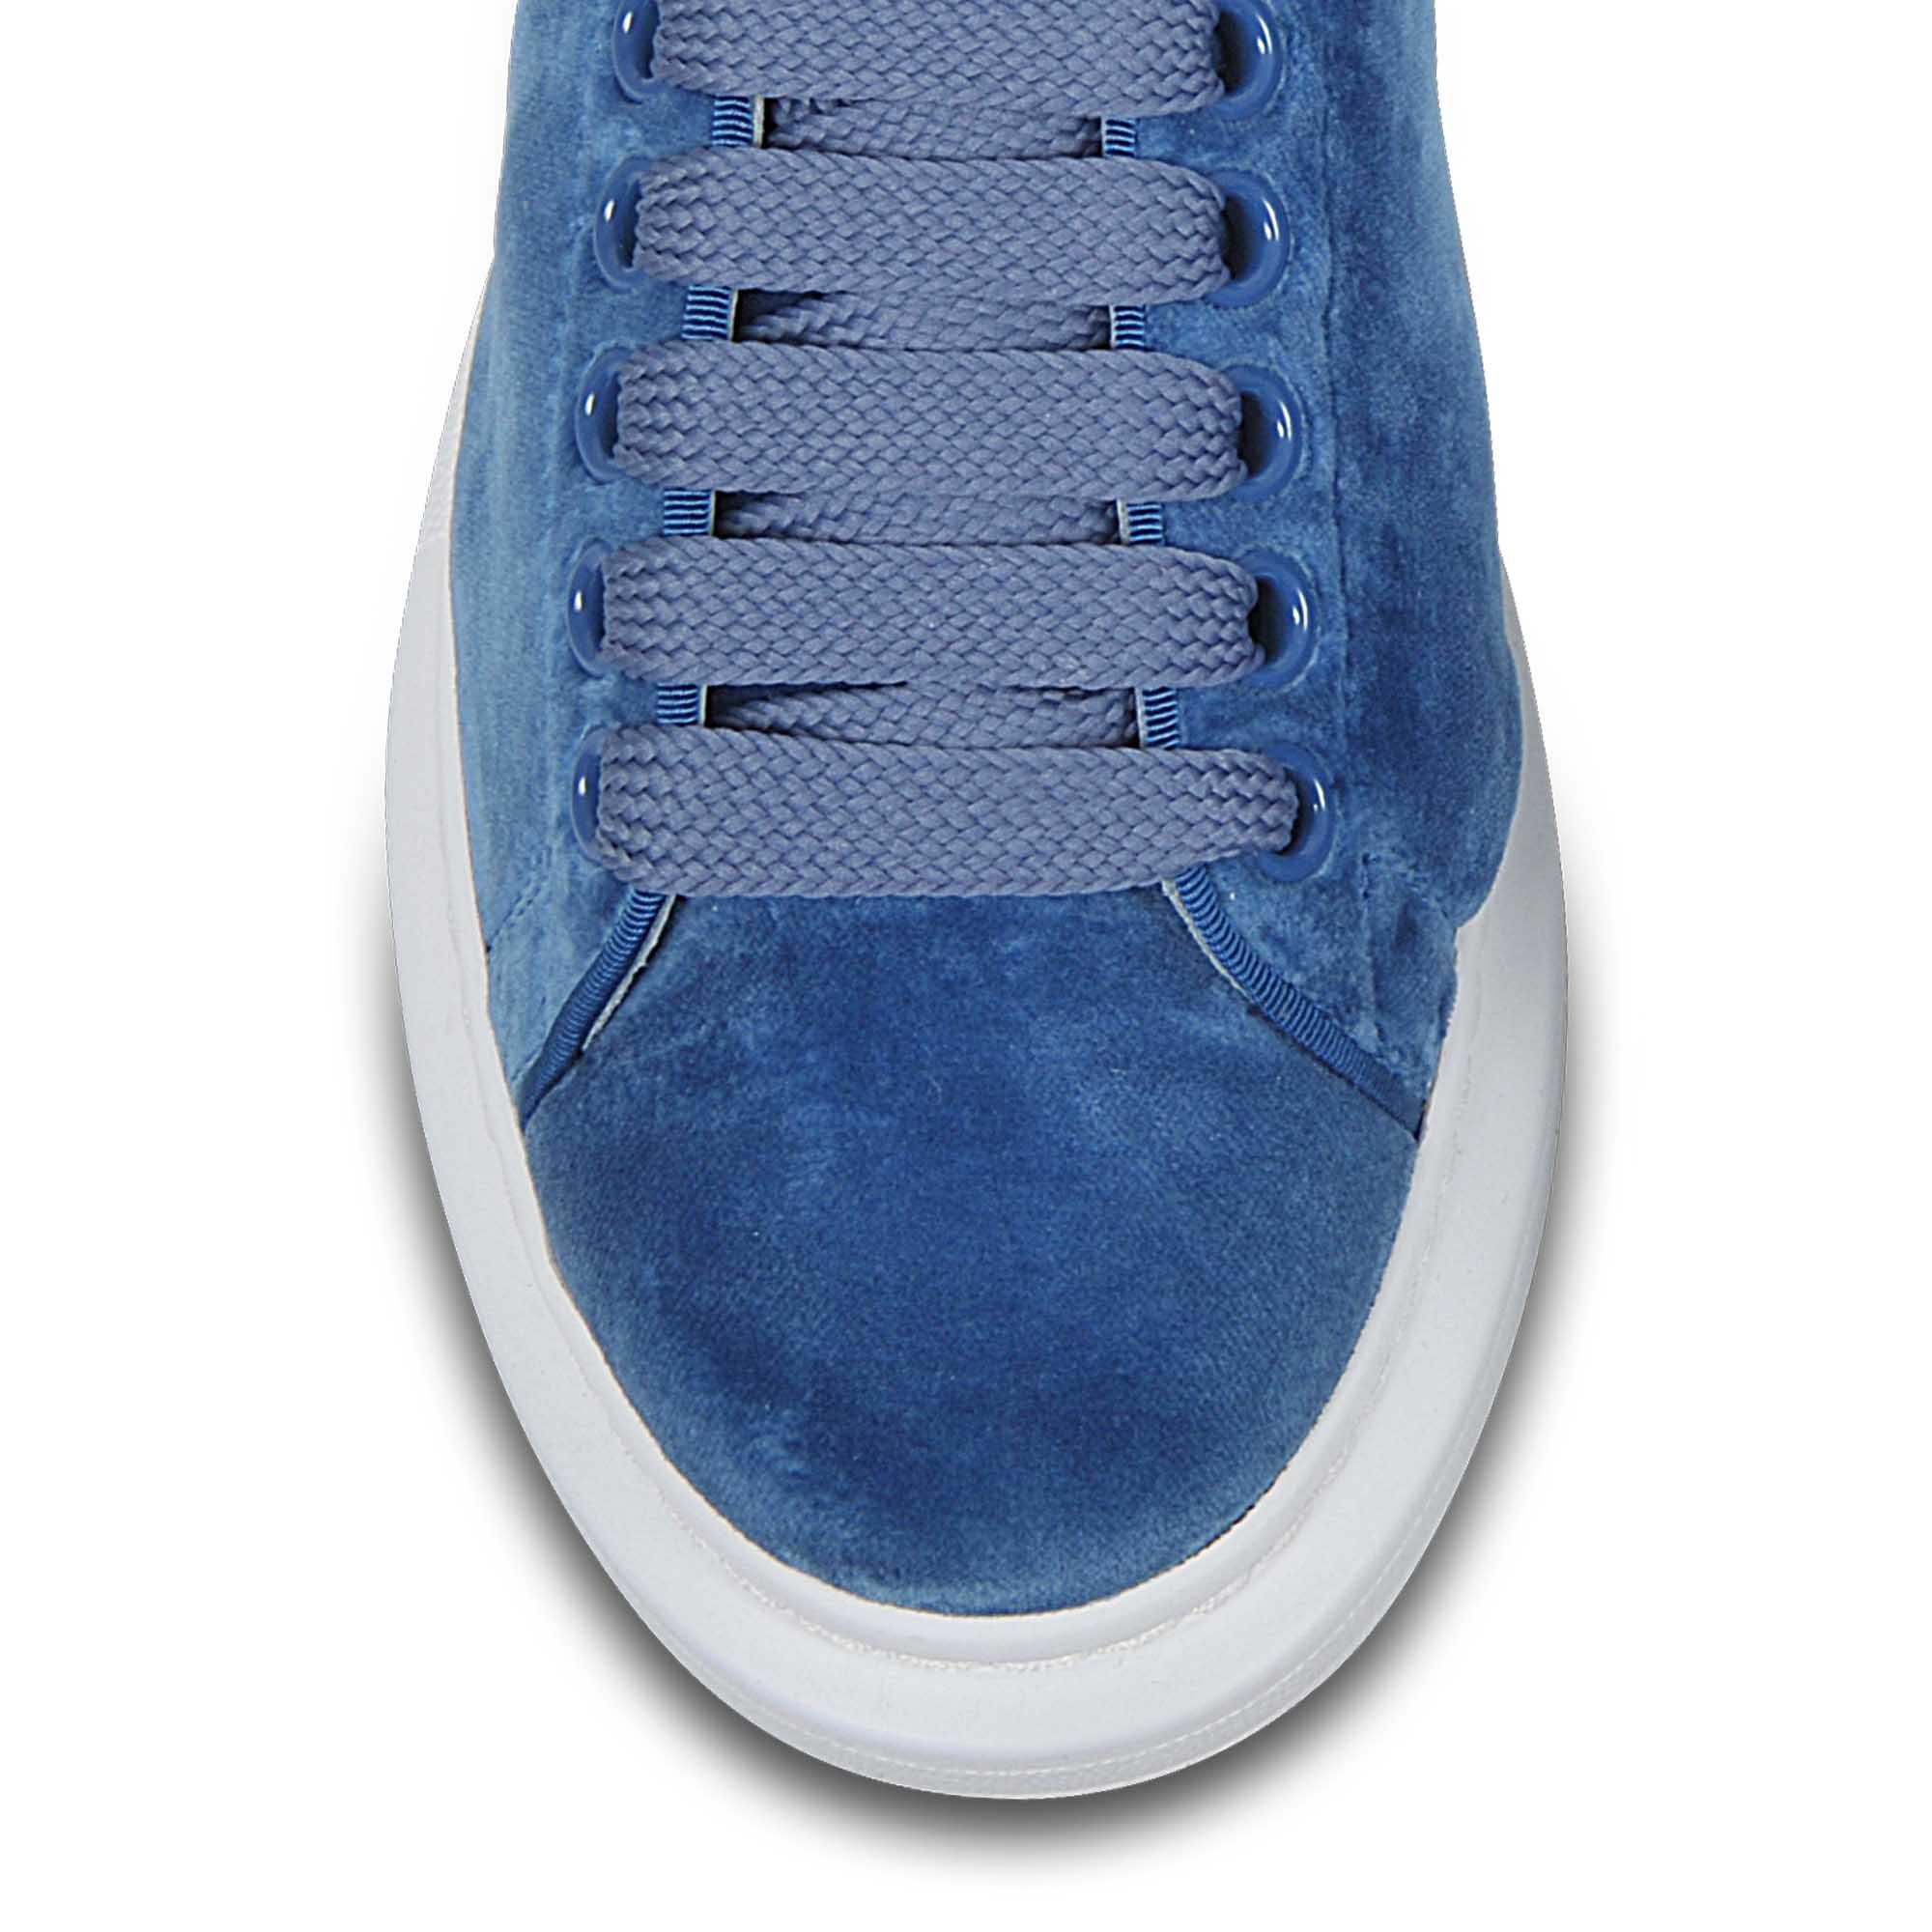 Alexander McQueen Velvet Sneakers in Blue | Lyst